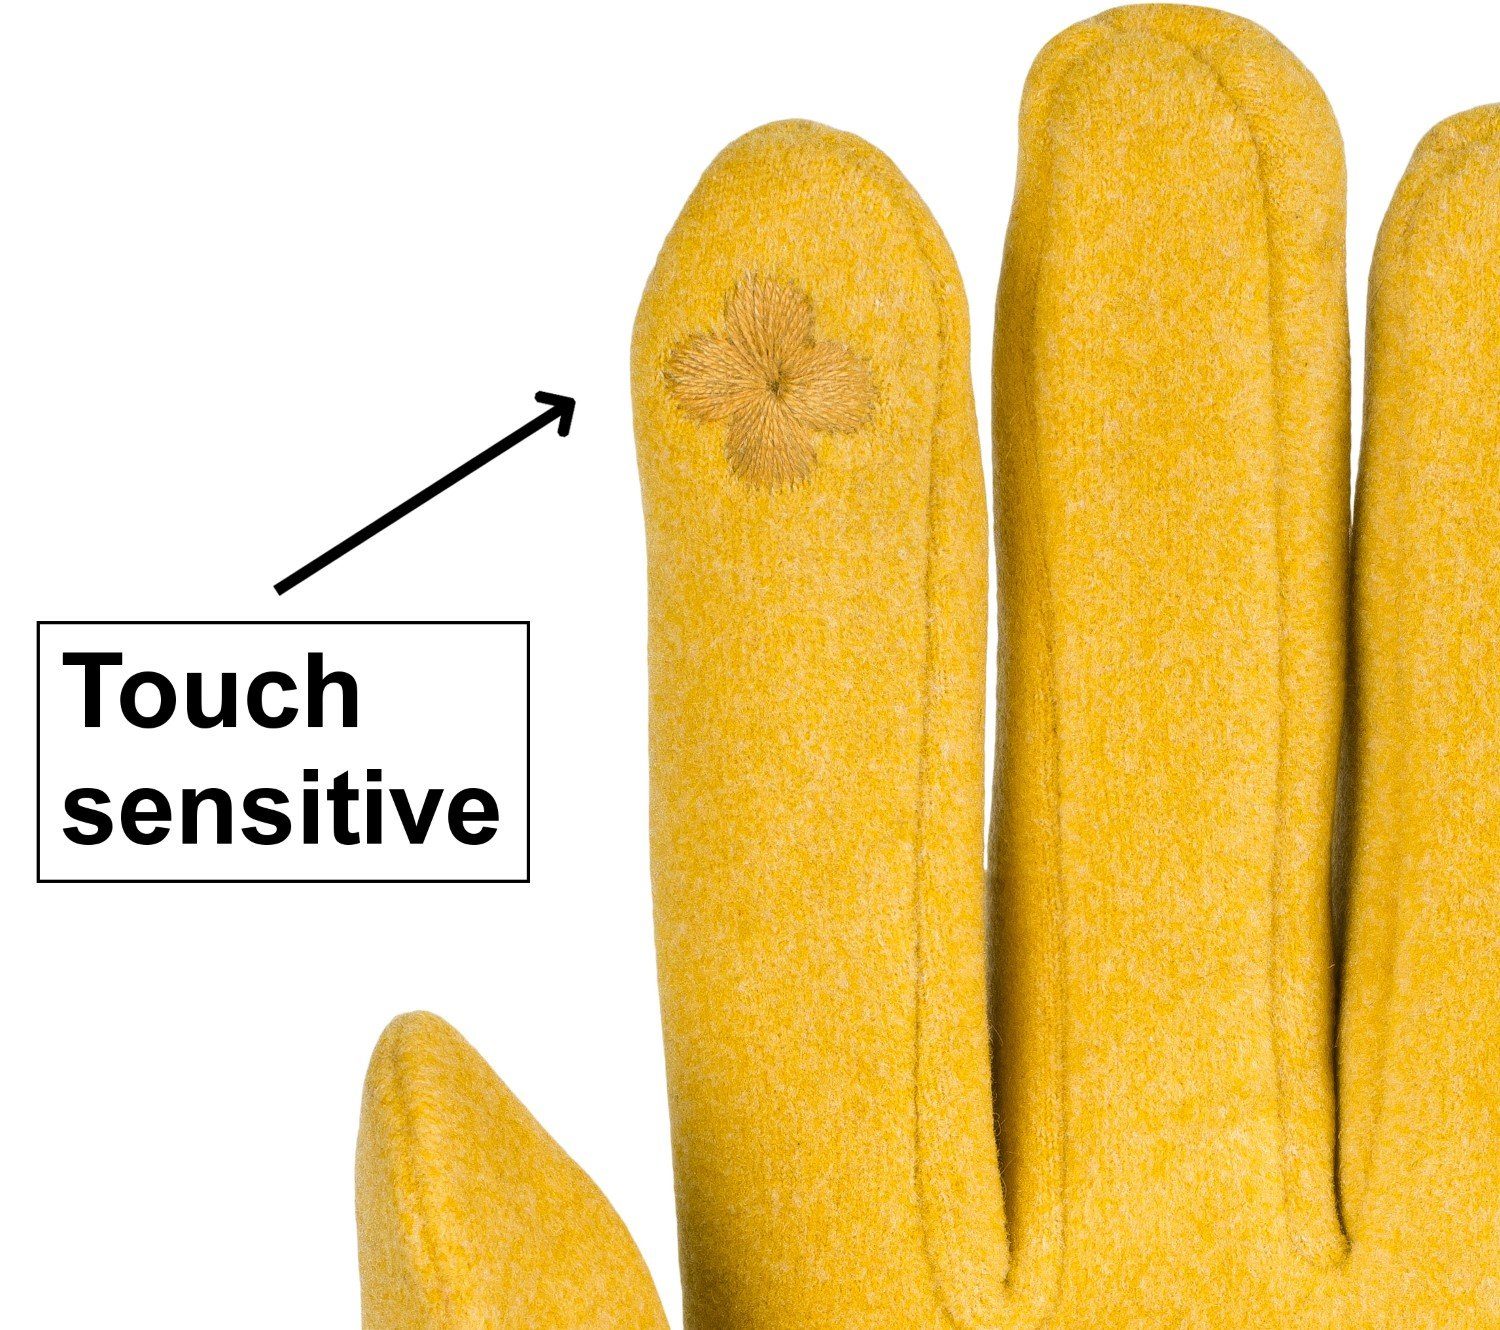 Damen Handschuhe styleBREAKER Fleecehandschuhe Touchscreen Handschuhe Teddyfell